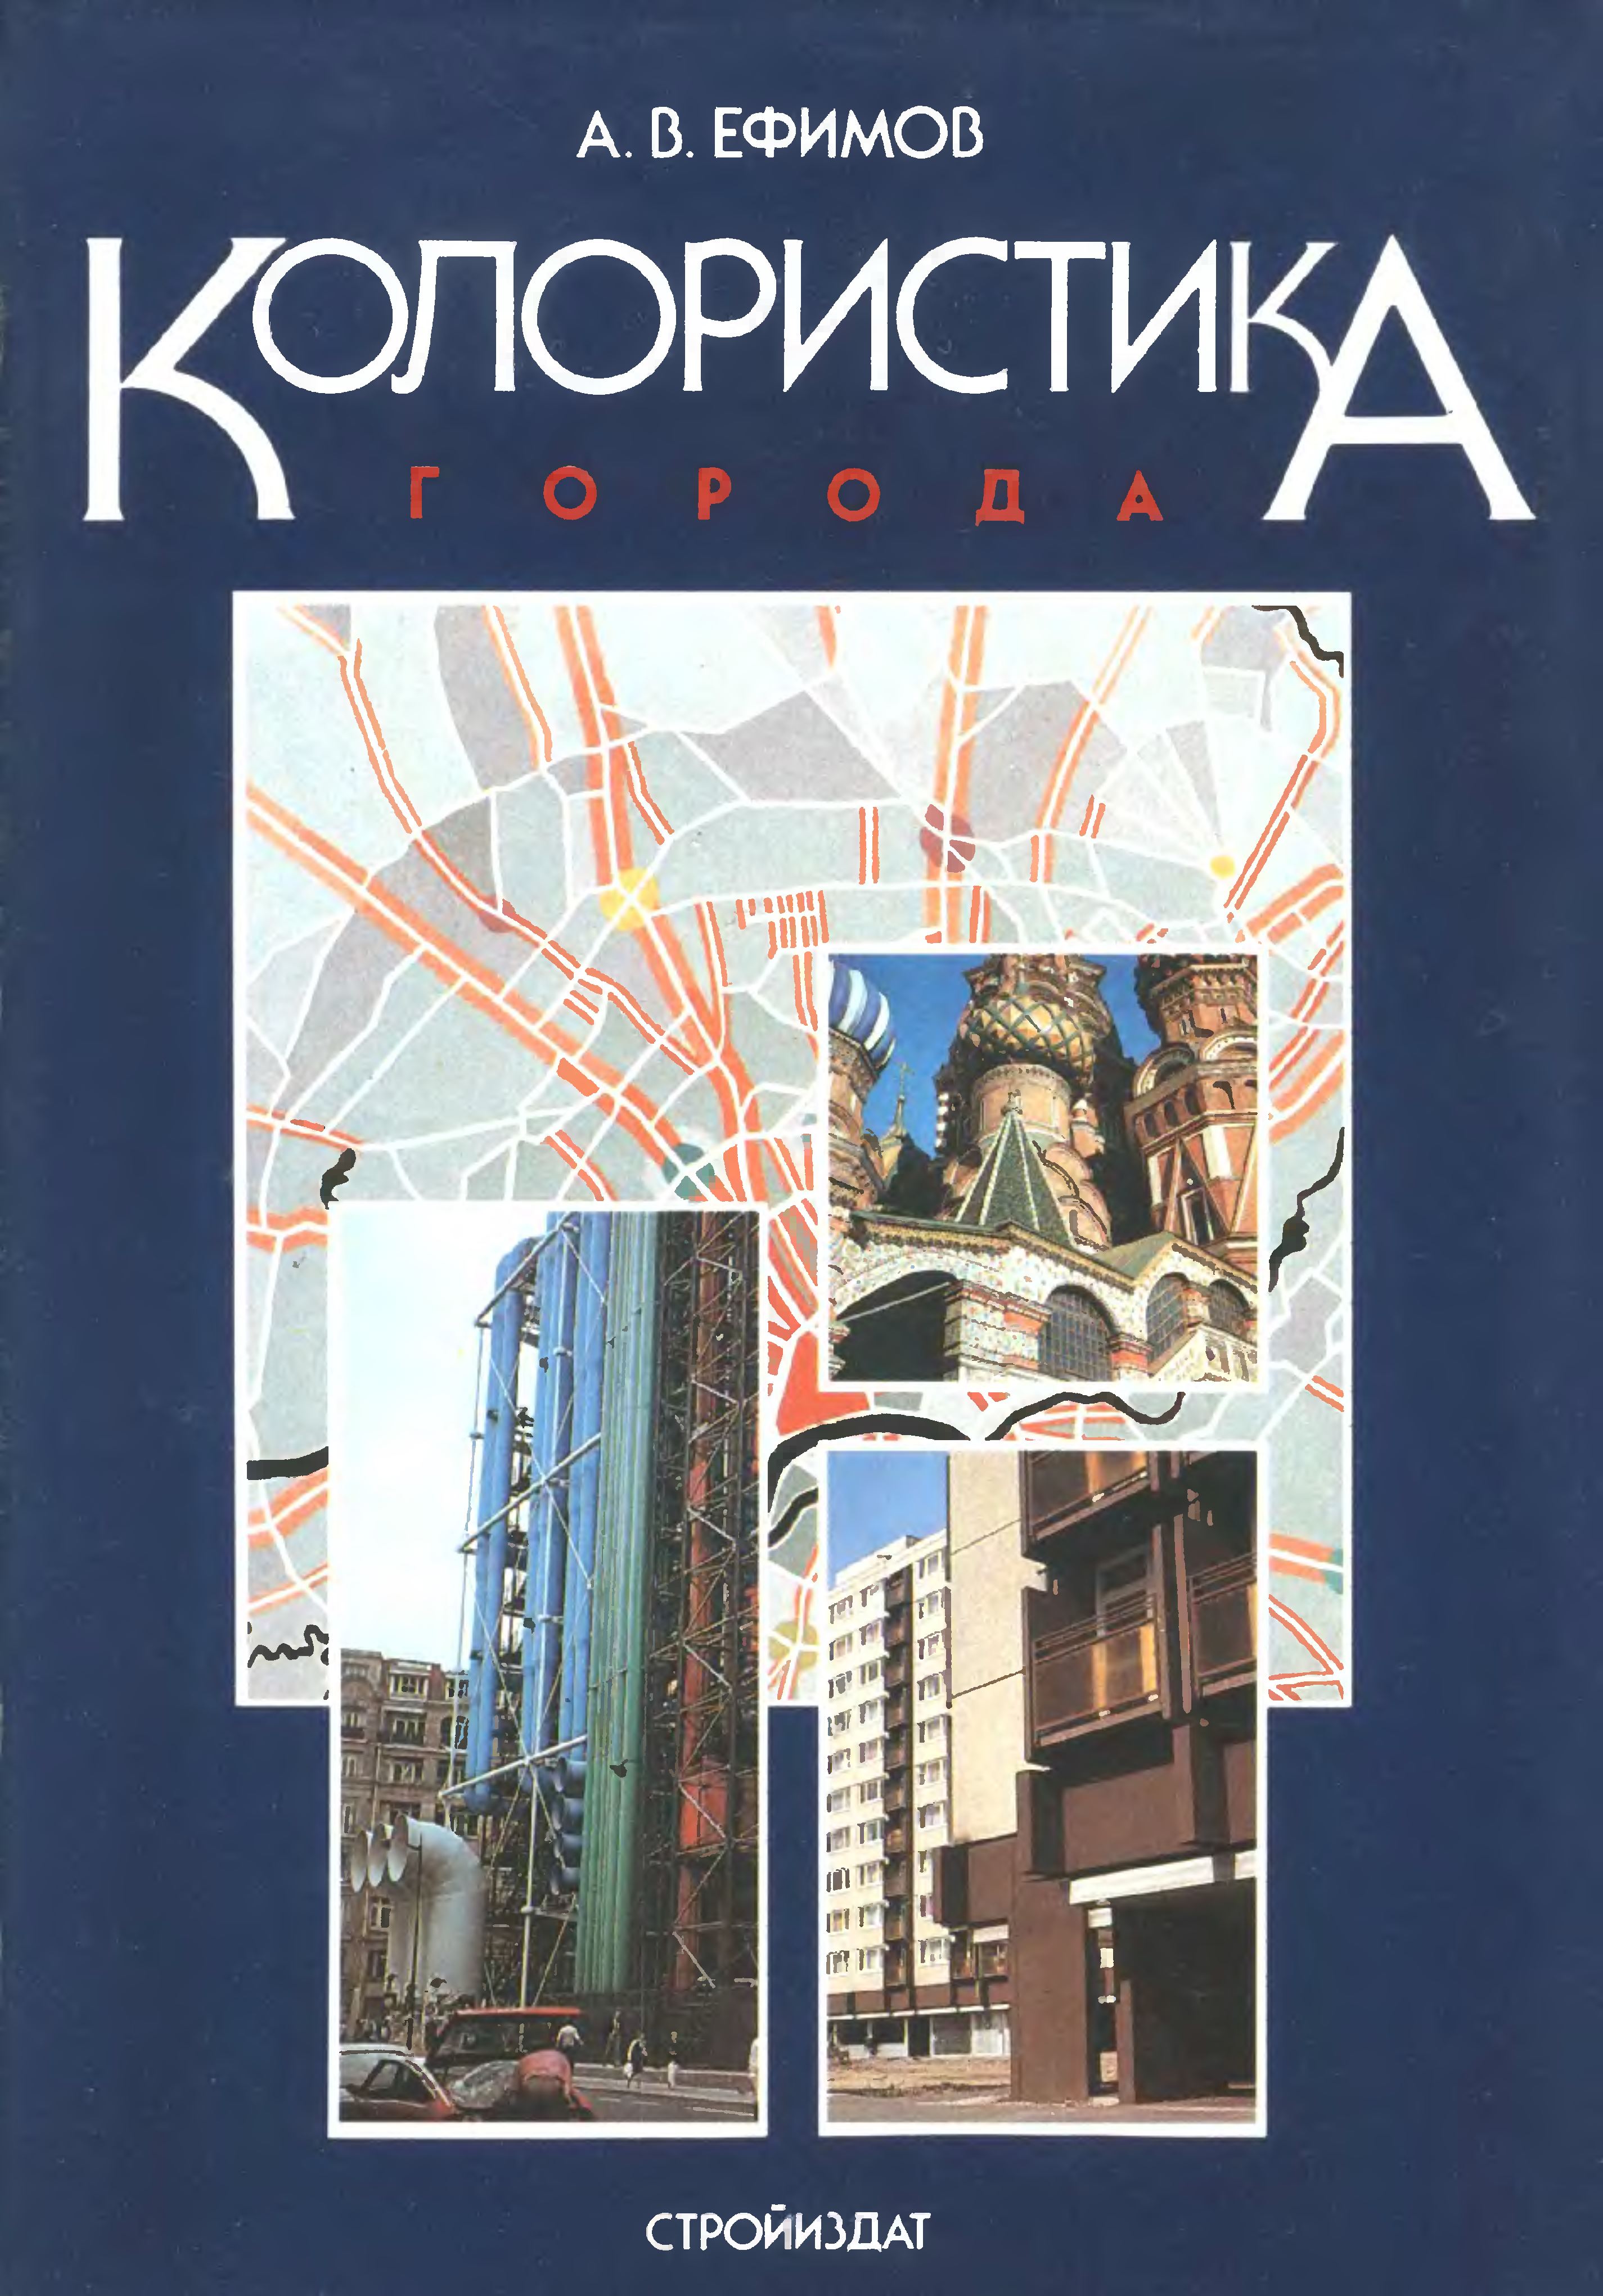 Колористика города / А. В. Ефимов. — Москва : Стройиздат, 1990